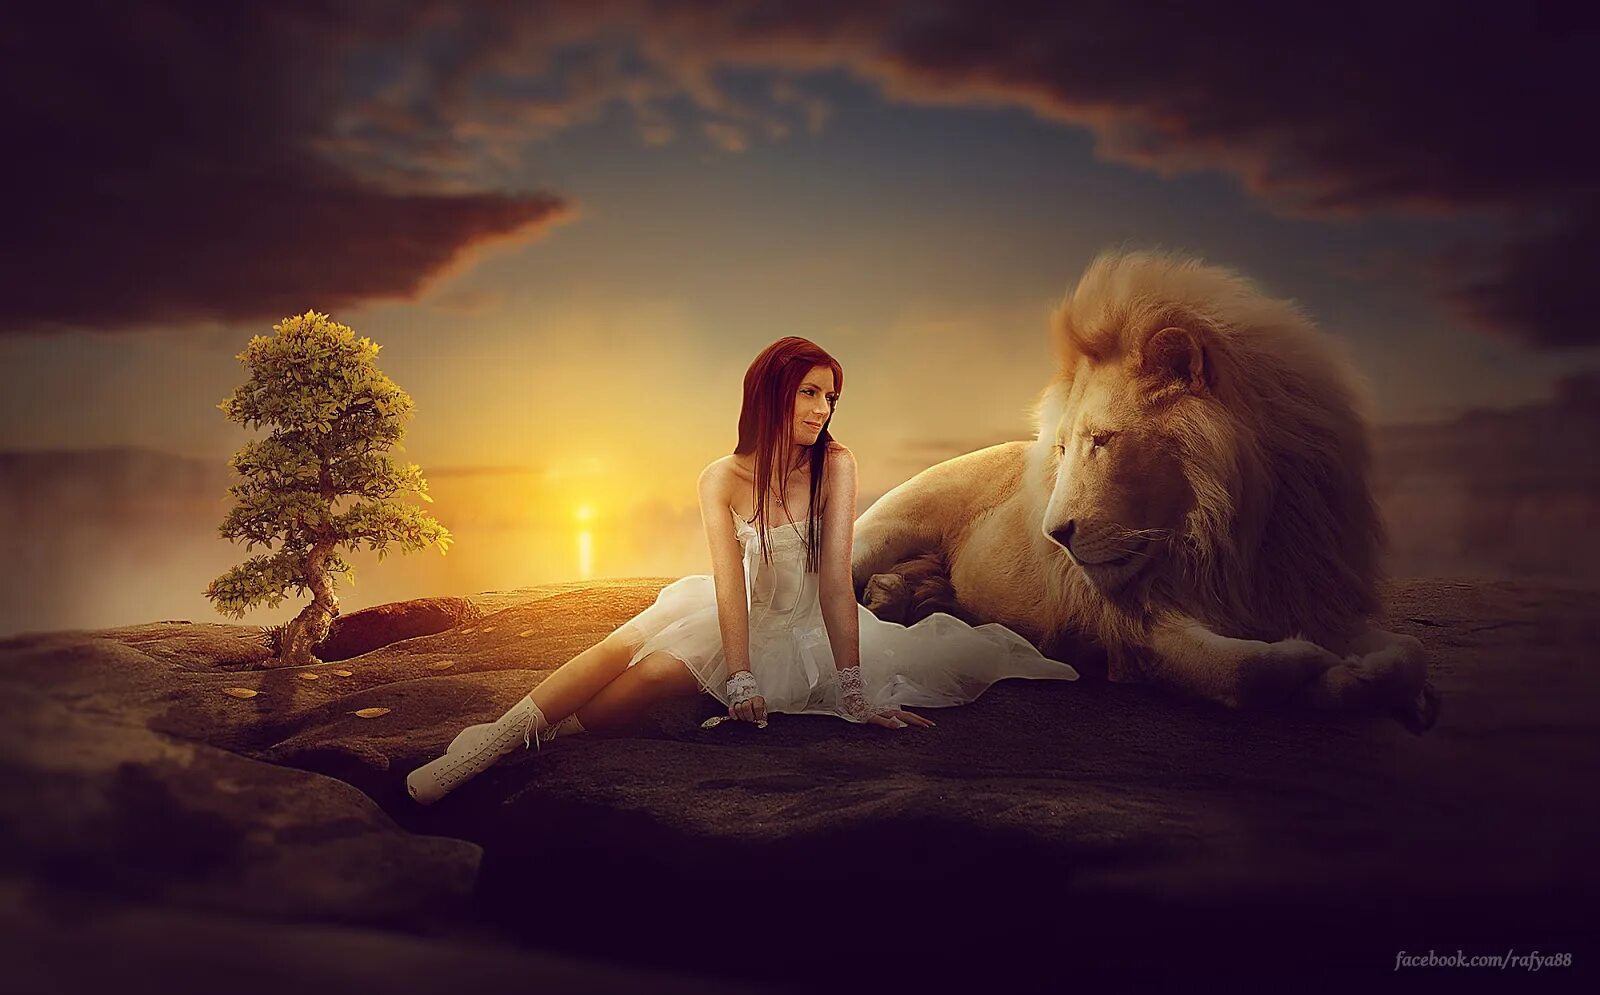 Мужчина лев форум женщин. Женщина Лев. Девочка и Лев. Девушка львица. Фотосессия со львом.